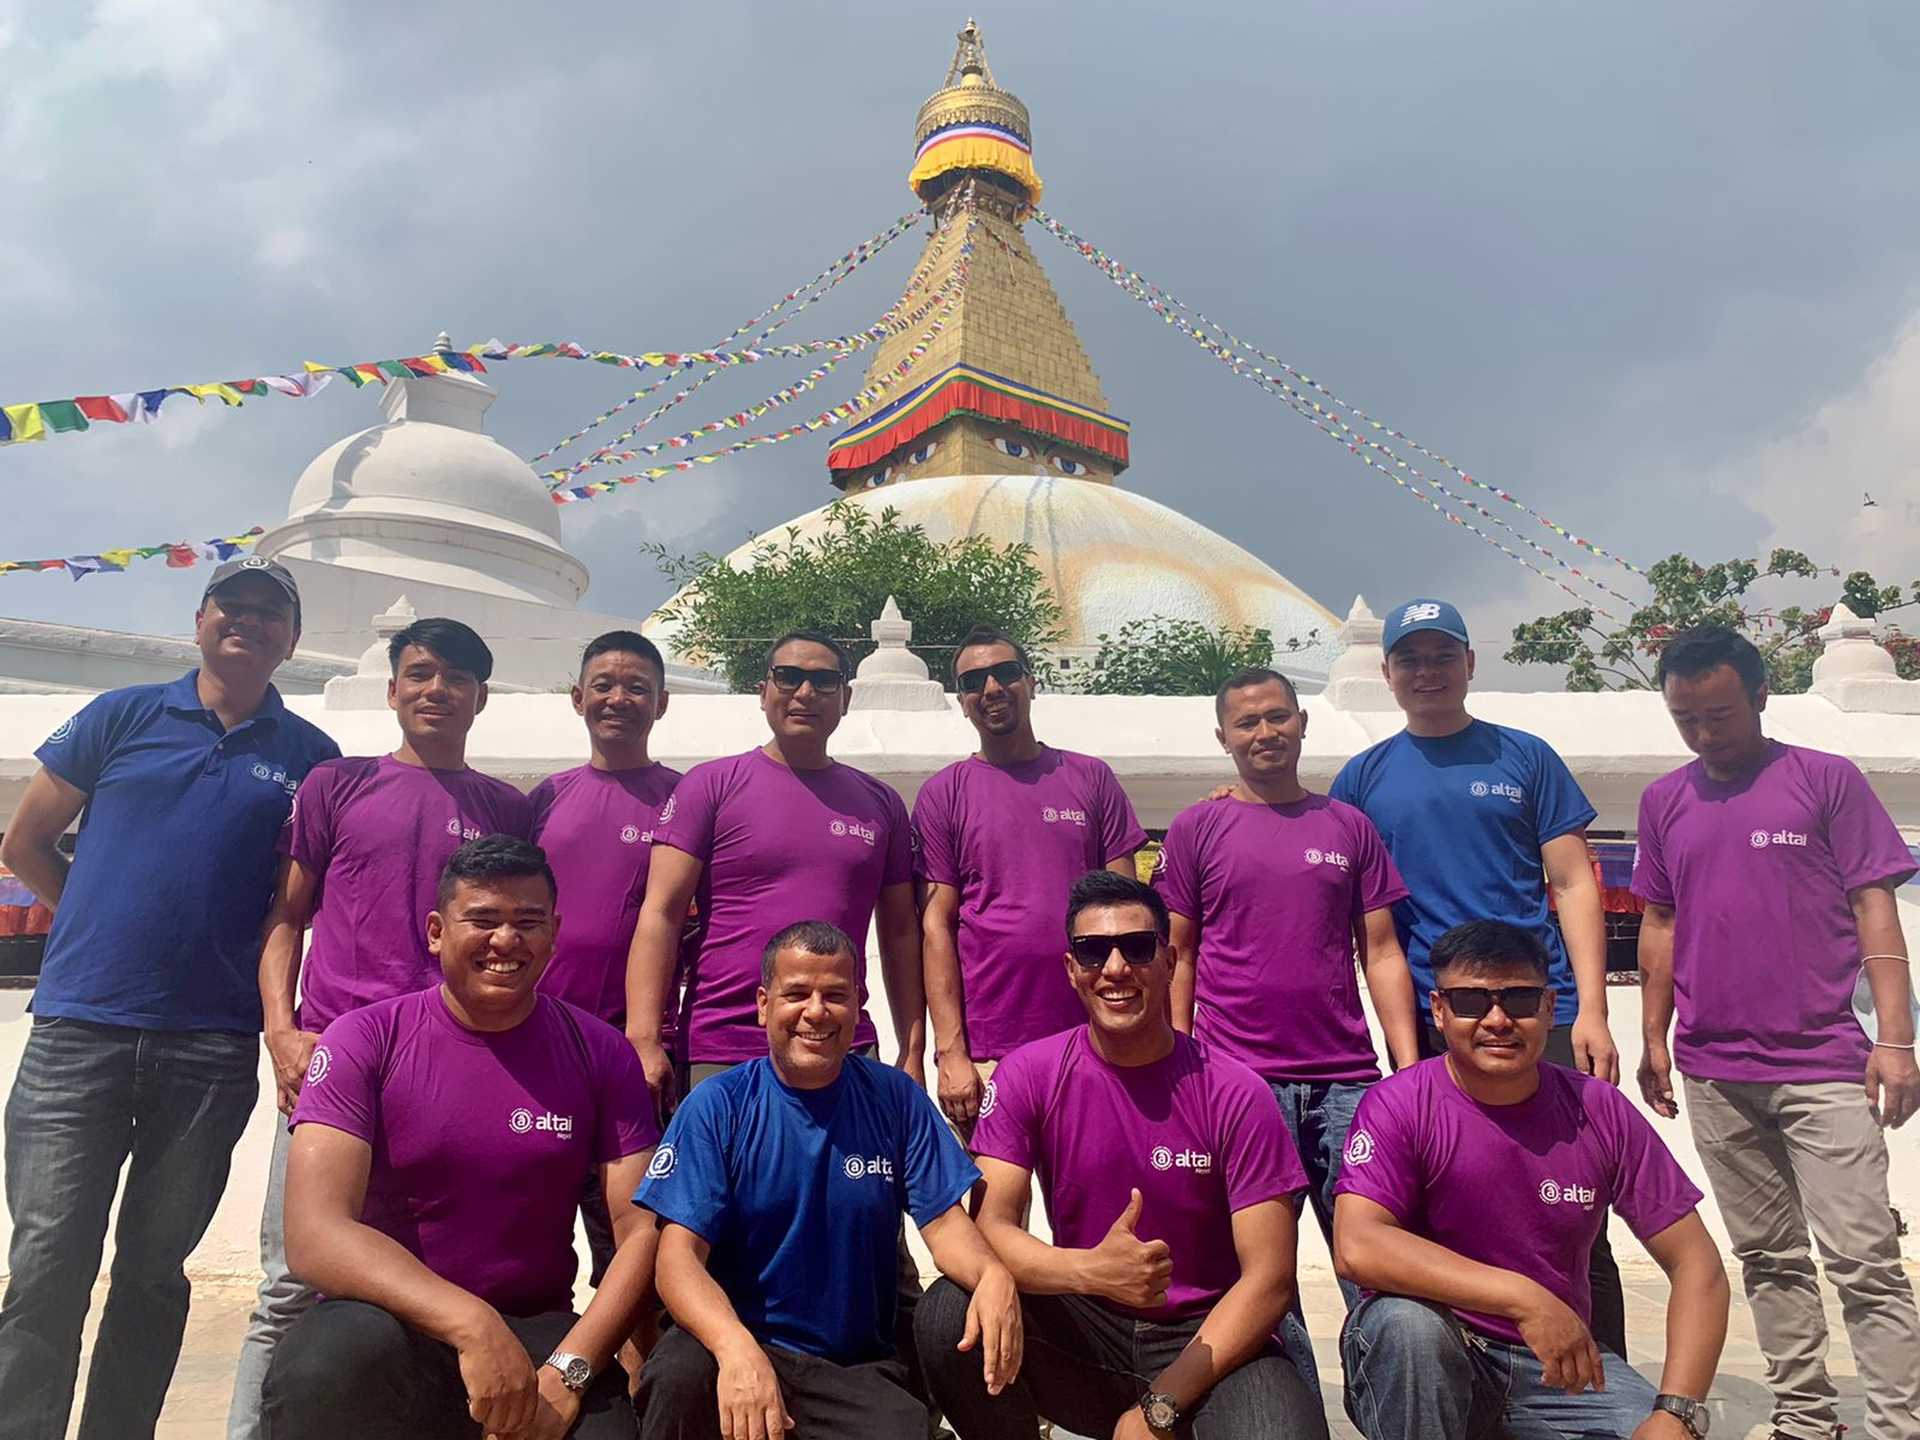 Equipe Altai Nepal